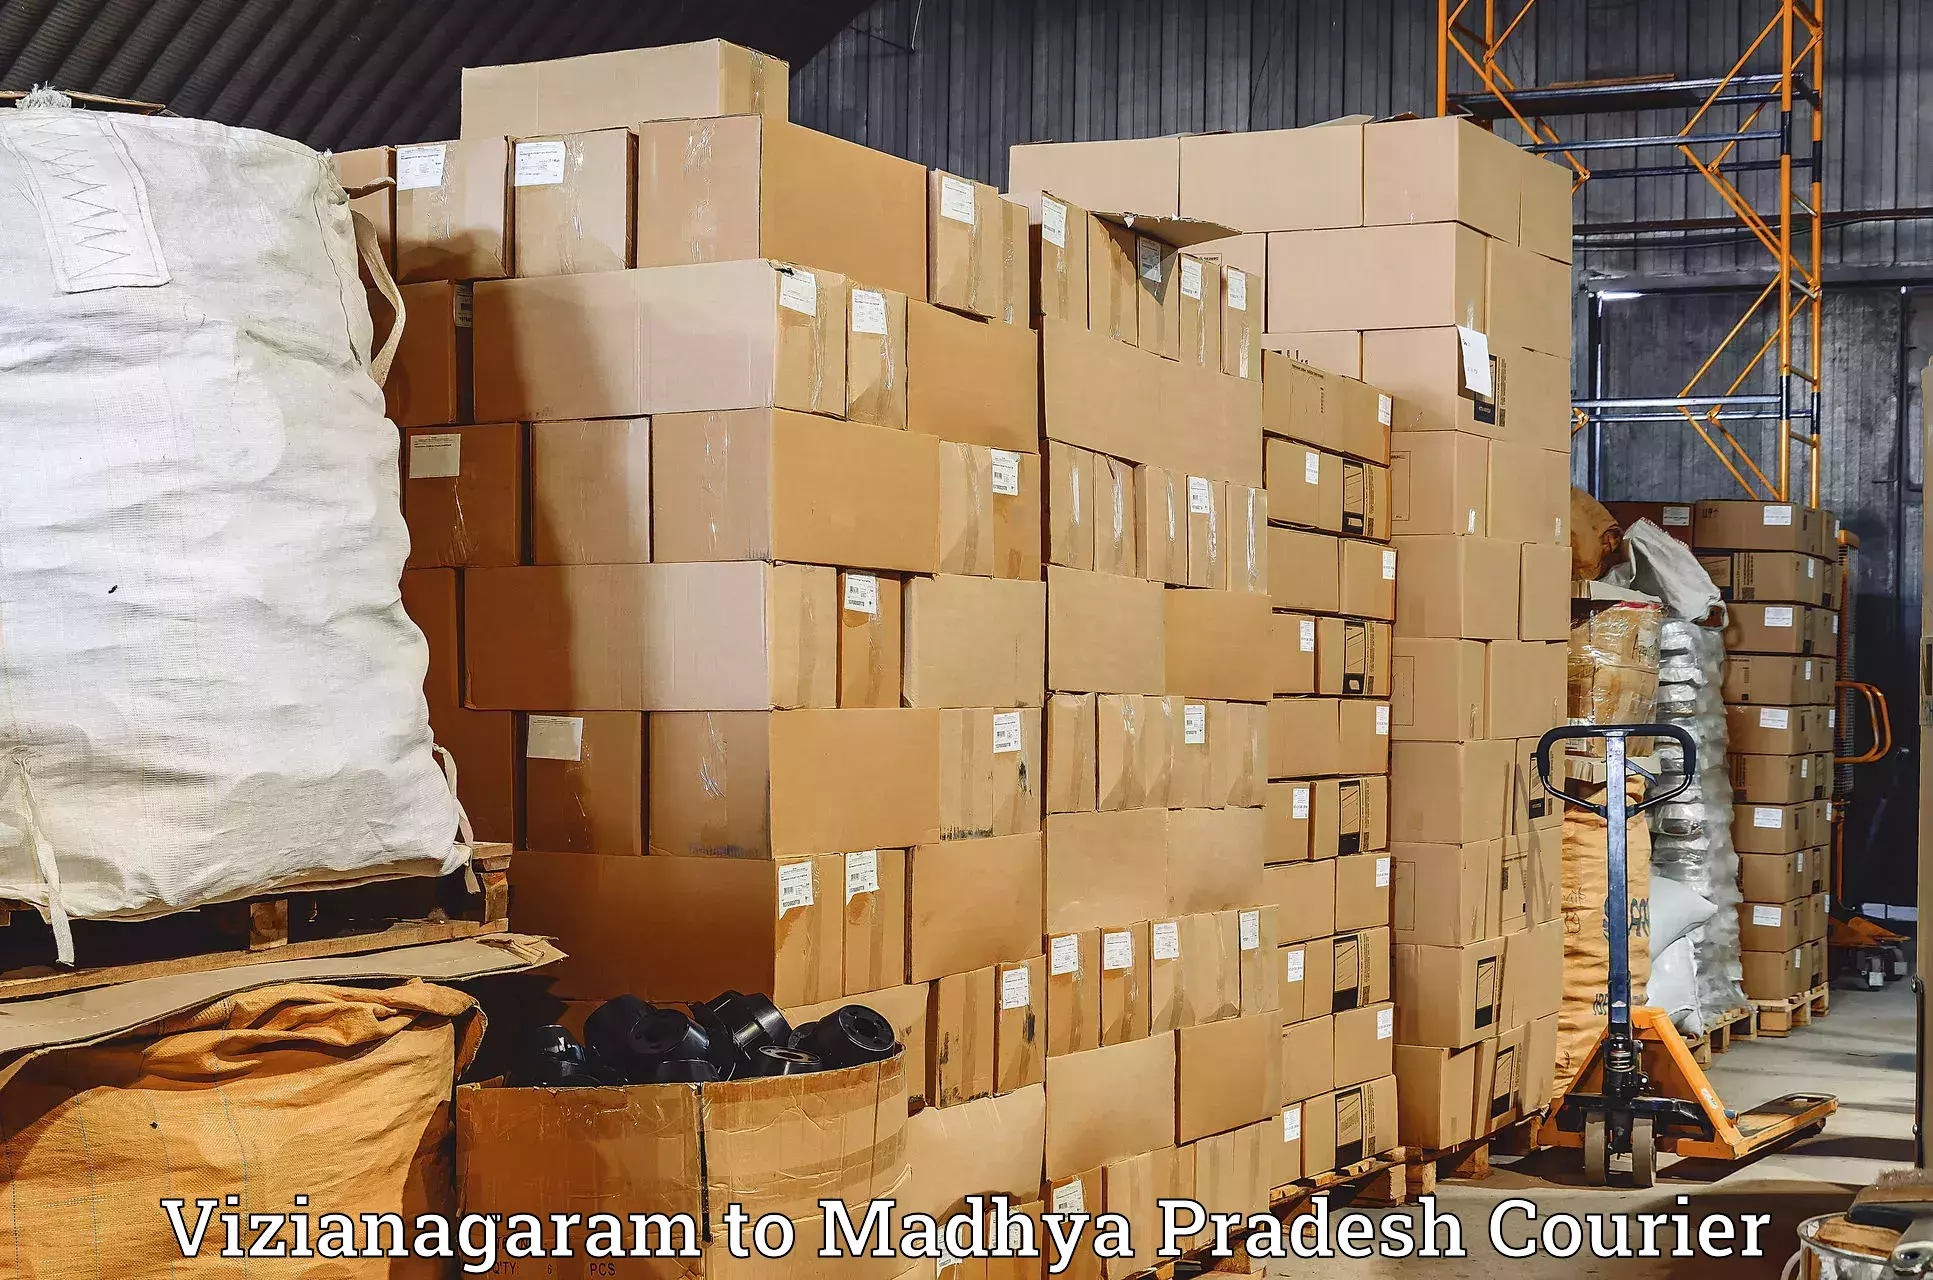 Urgent courier needs Vizianagaram to Madhya Pradesh